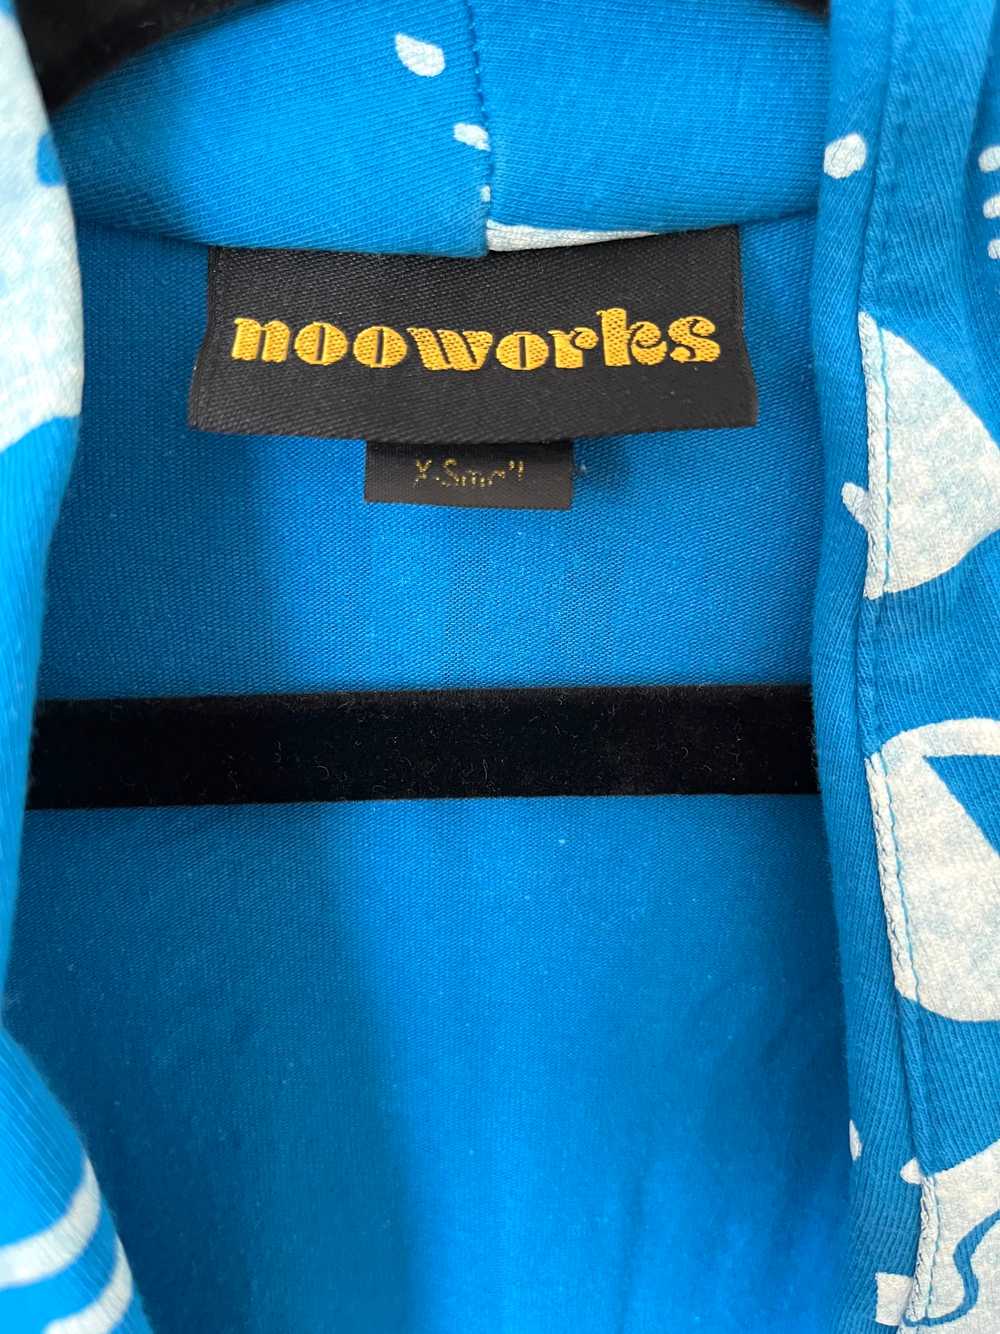 Nooworks Magic Suit - Manic - image 7